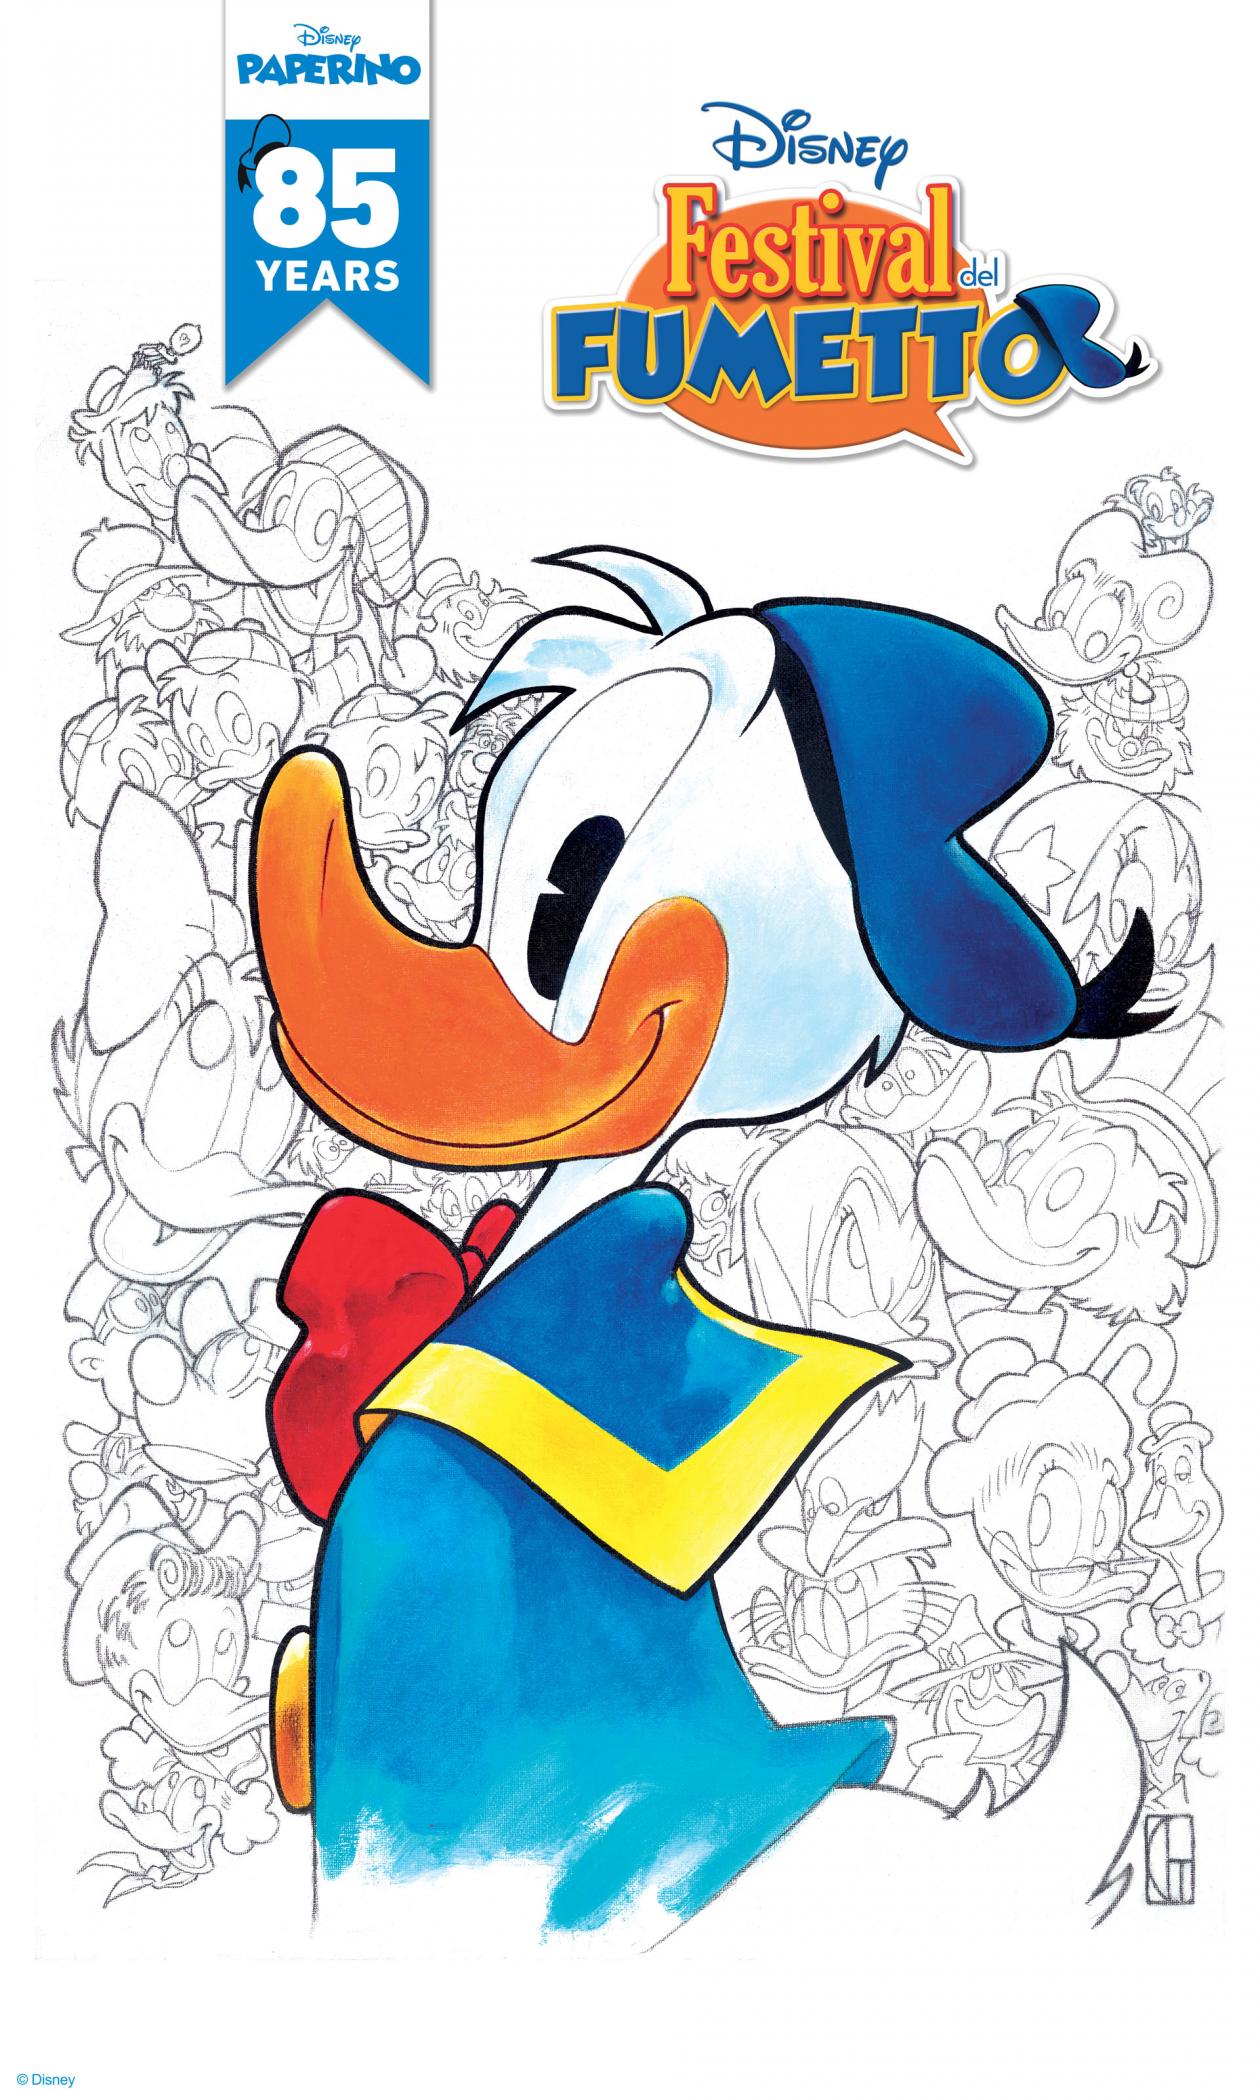 Festival del Fumetto per l'85esimo anniversario di Donald Duck (Paperino) [credit: Disney]